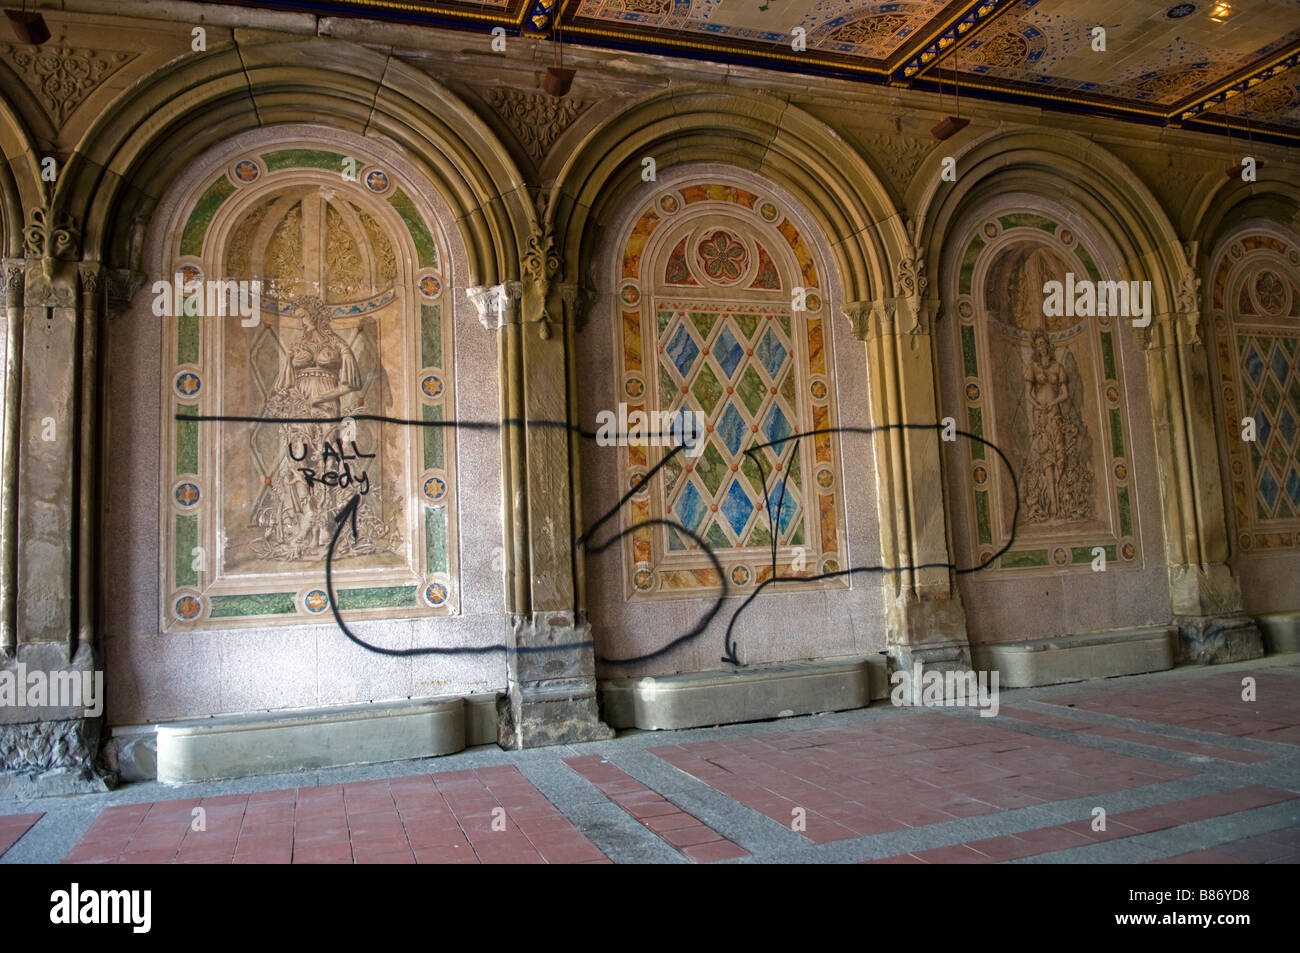 Der Central Park Bethesda Terrasse Arcade mit restaurierten Decken und Wände Stockfoto